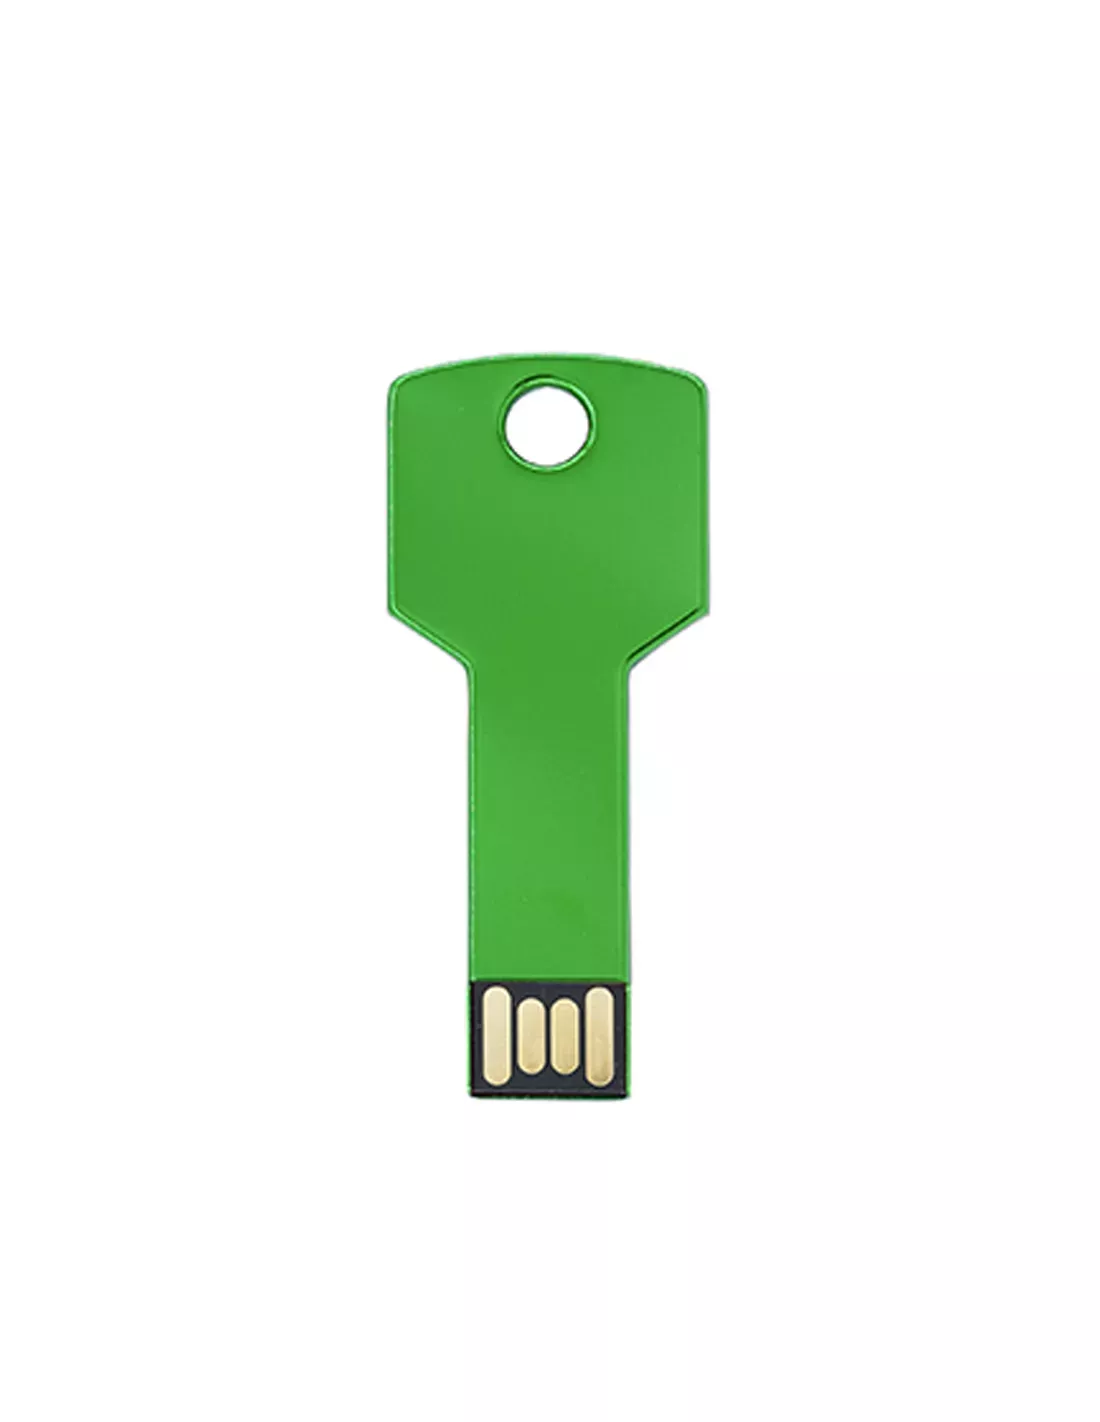 Pendrive extraplano (memoria USB) personalizado, formato llave  16GB CYCLON color (Verde helecho)